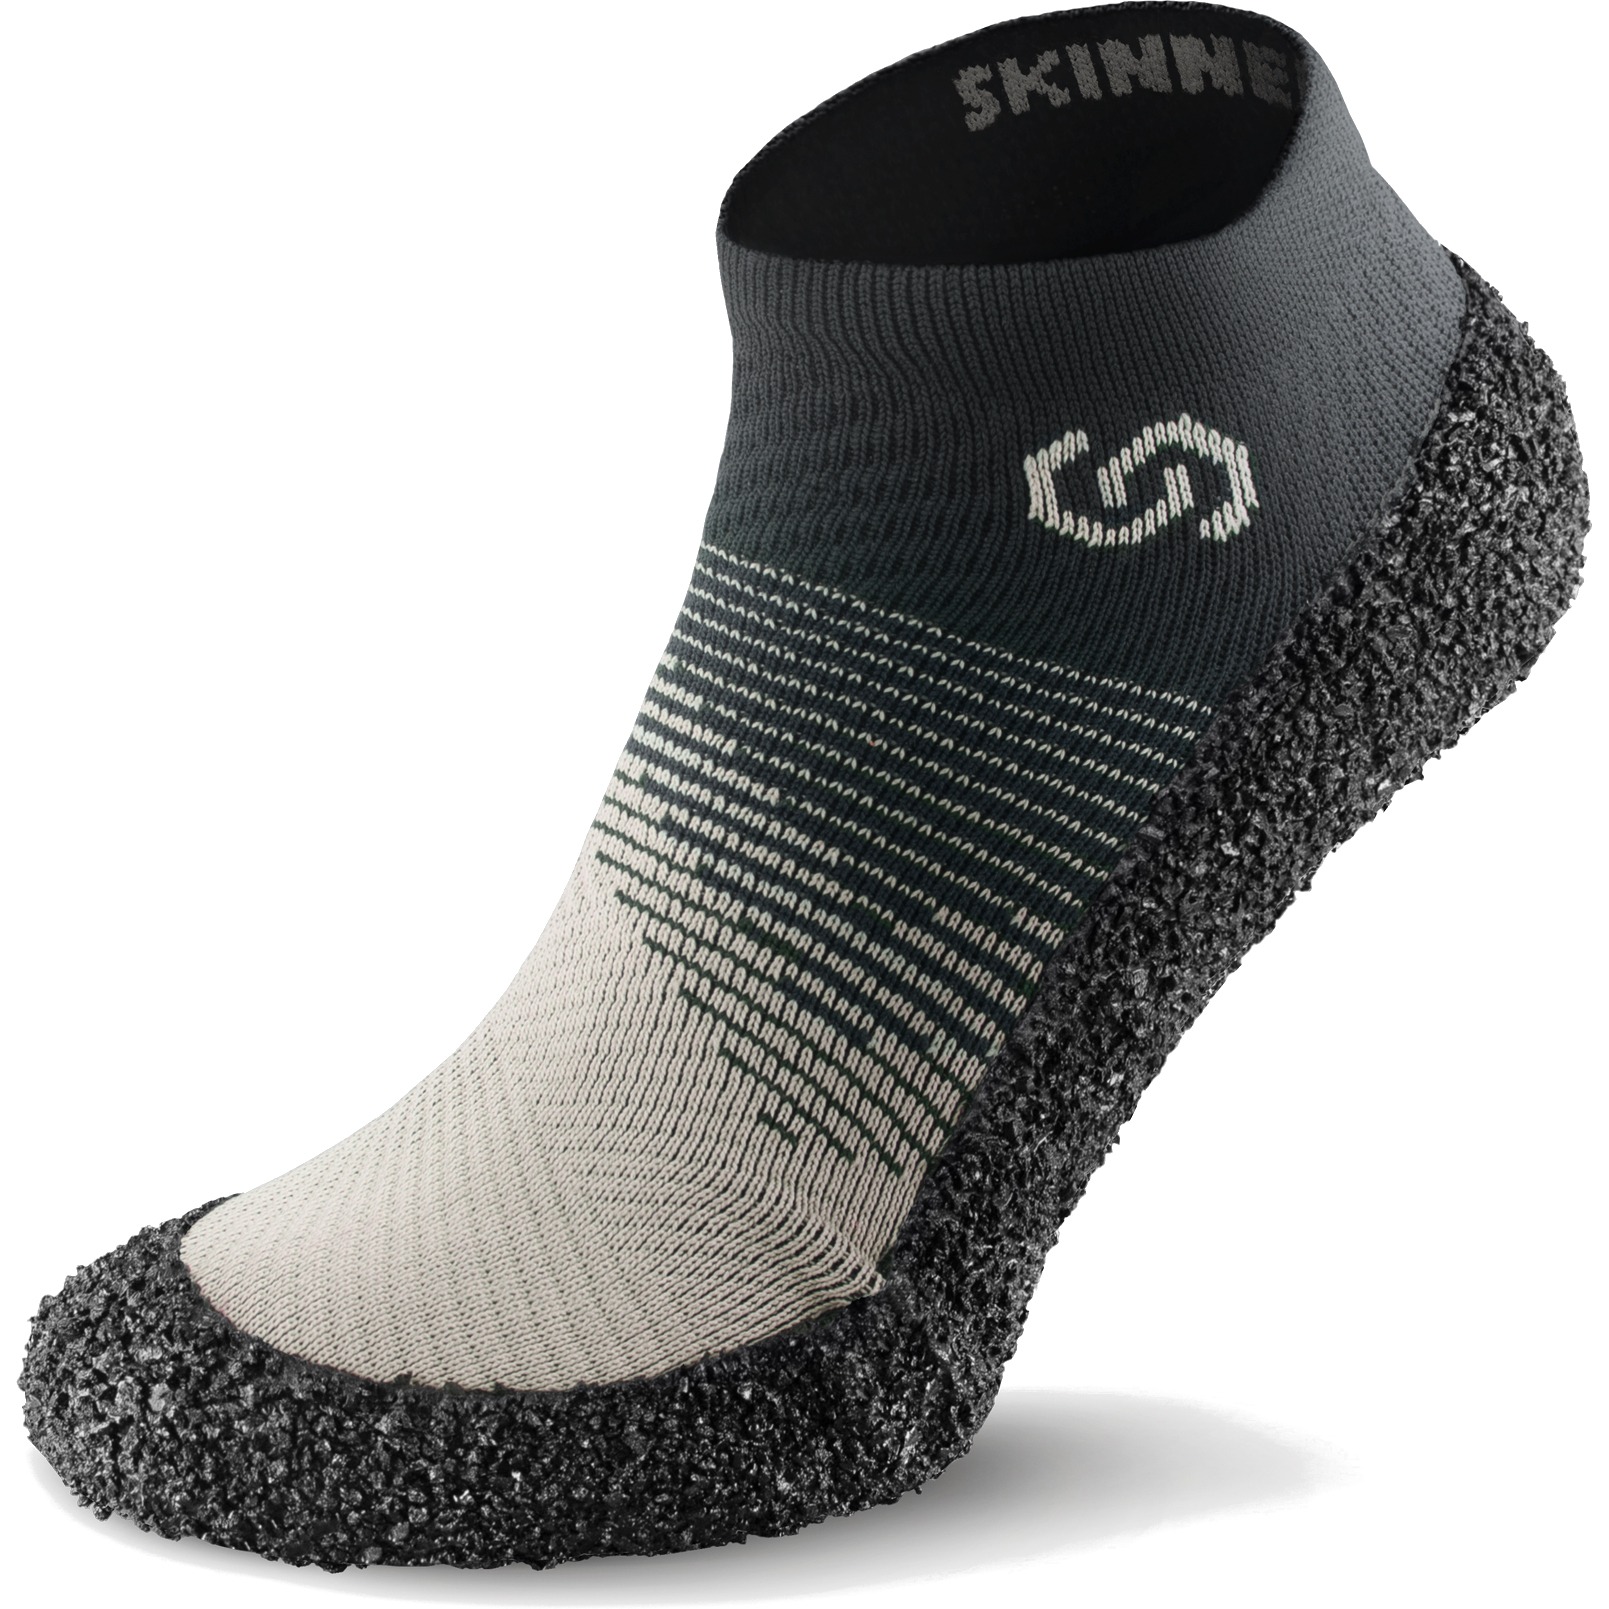 Productfoto van Skinners Sock Shoes 2.0 - ivory